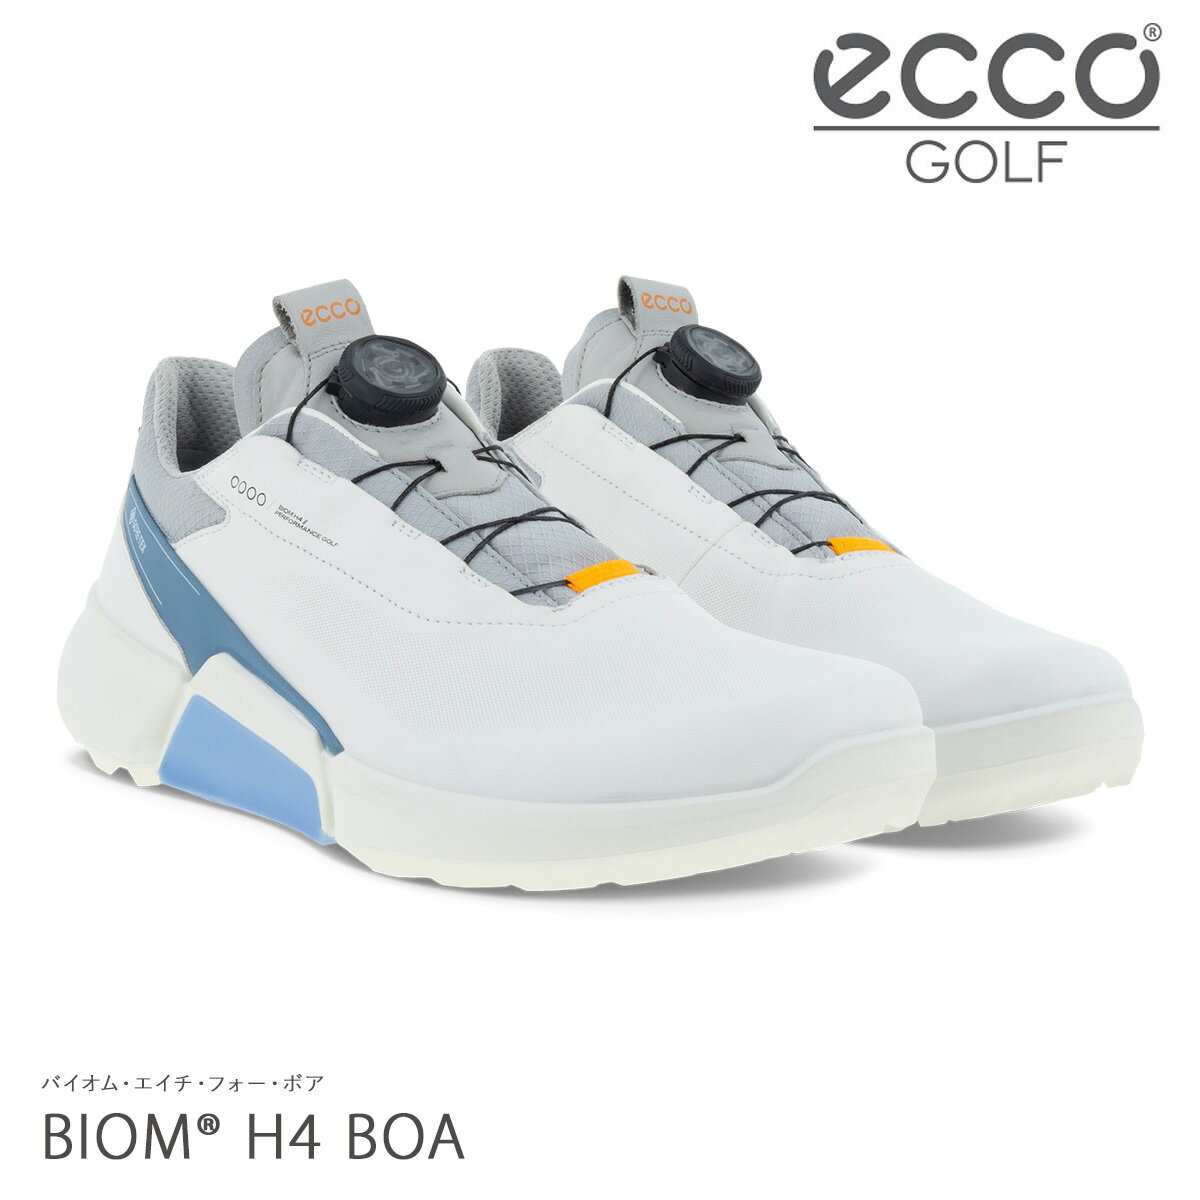 エコー ゴルフ シューズ バイオム エイチ フォー ボア スパイクレス メンズ 男性用 108504 ECCO BIOM H4 BOA リール ダイヤル式 靴 メンズゴルフ